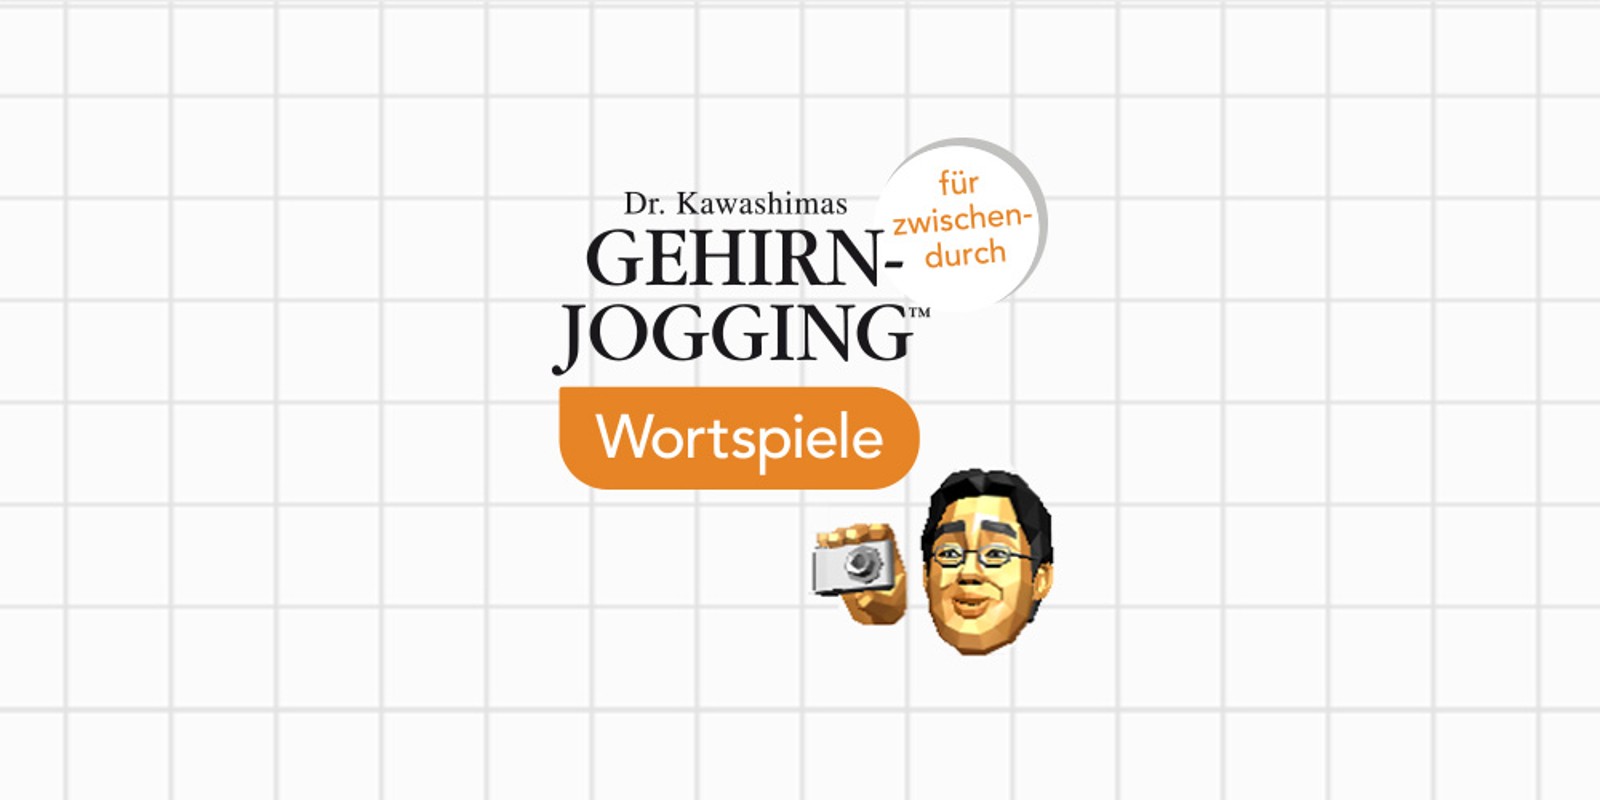 Dr. Kawashimas Gehirn-Jogging für zwischendurch: Wortspiele